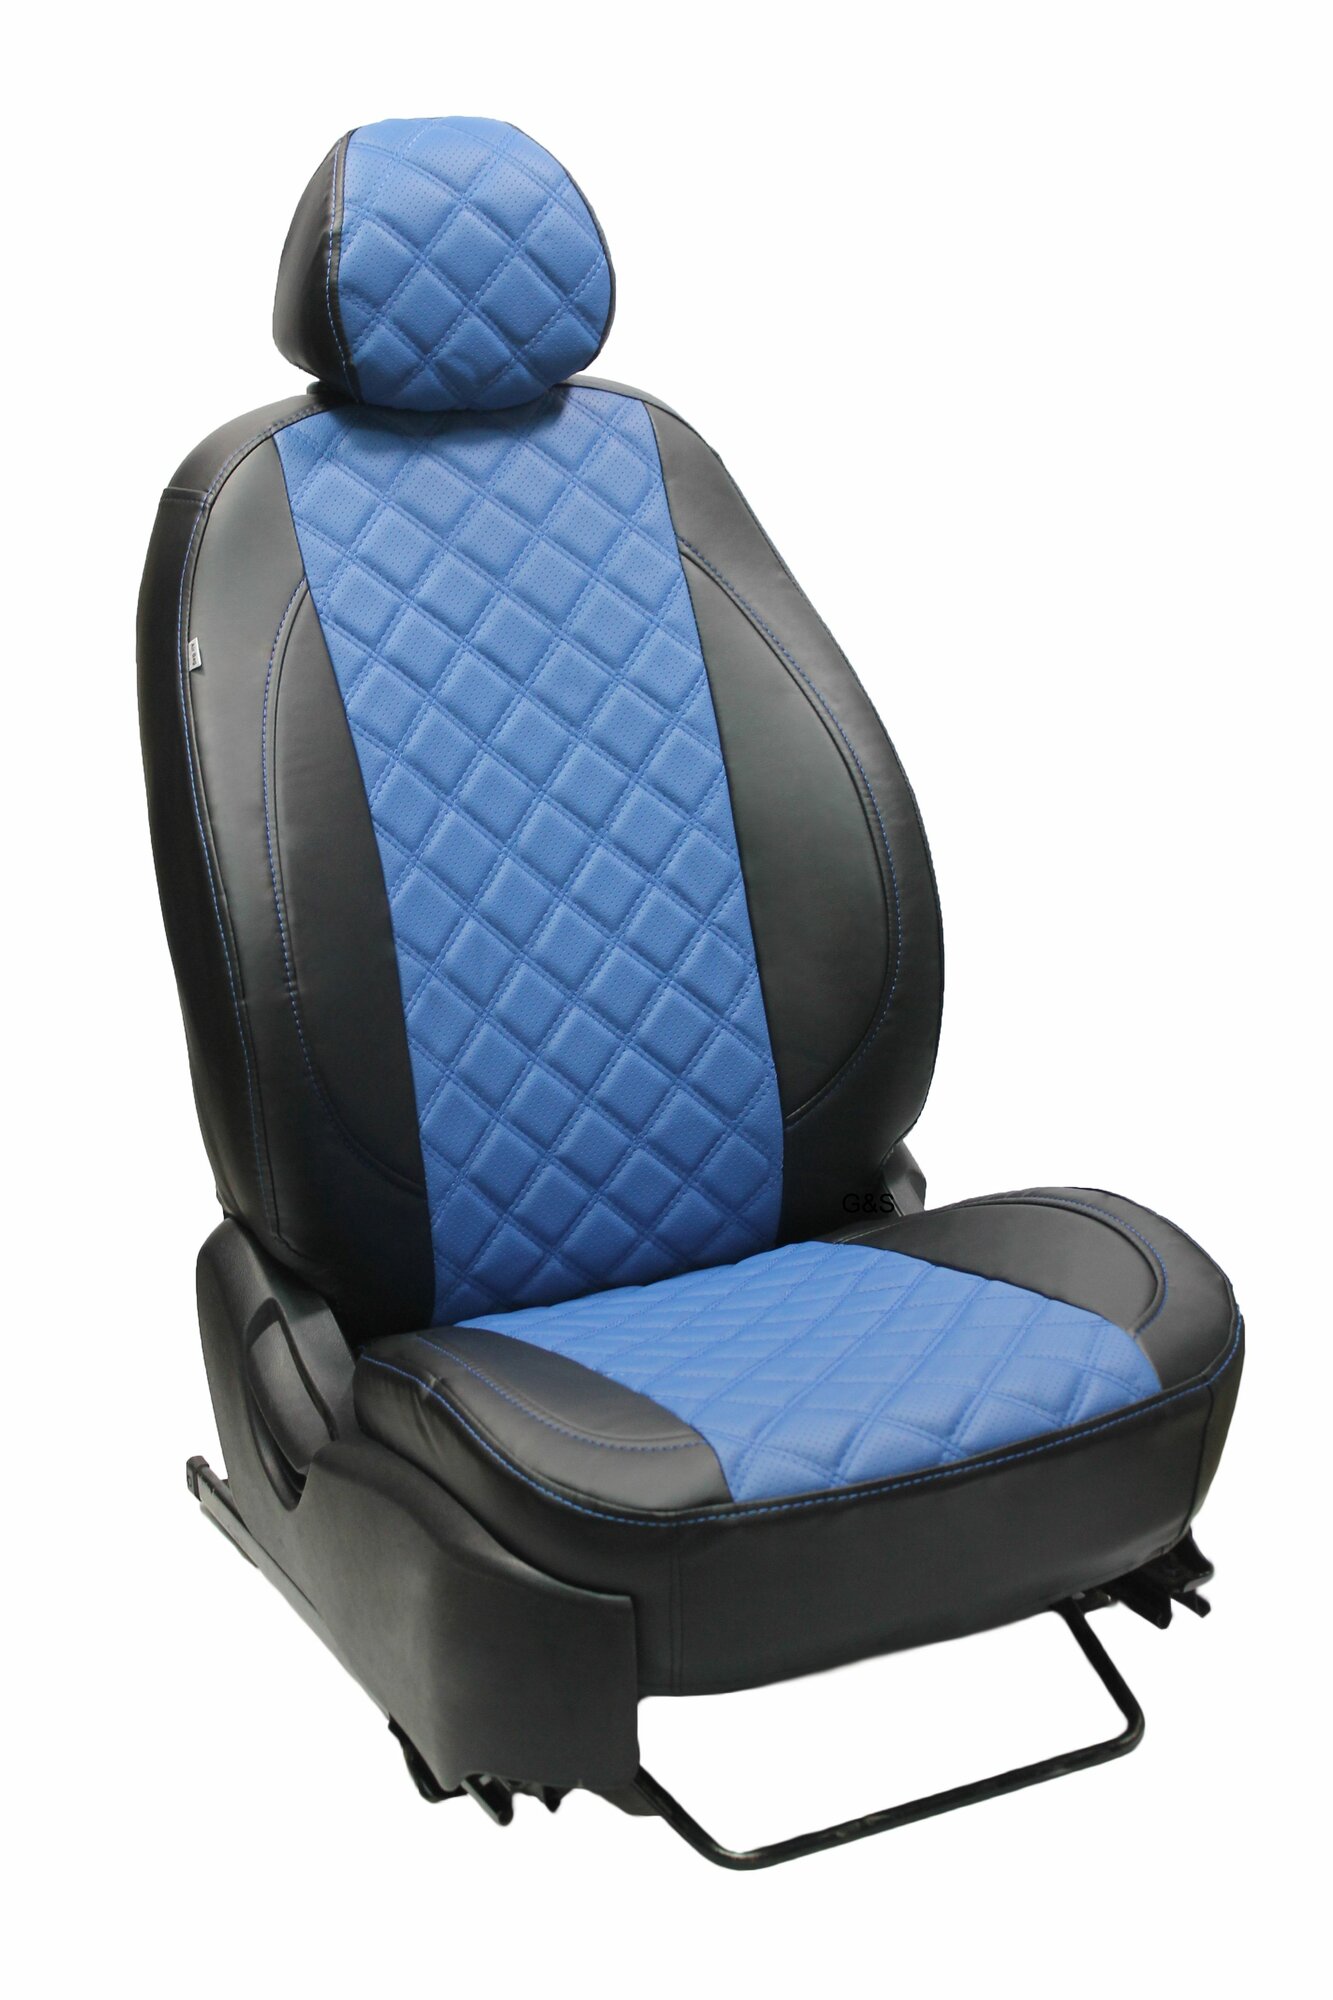 Чехлы для автомобильных сидений комплект Premium на MAZDA 3 (2003-2009; 2010-2012) седан, хэтчбек, авточехлы модельные экокожа, черно-синий ромб